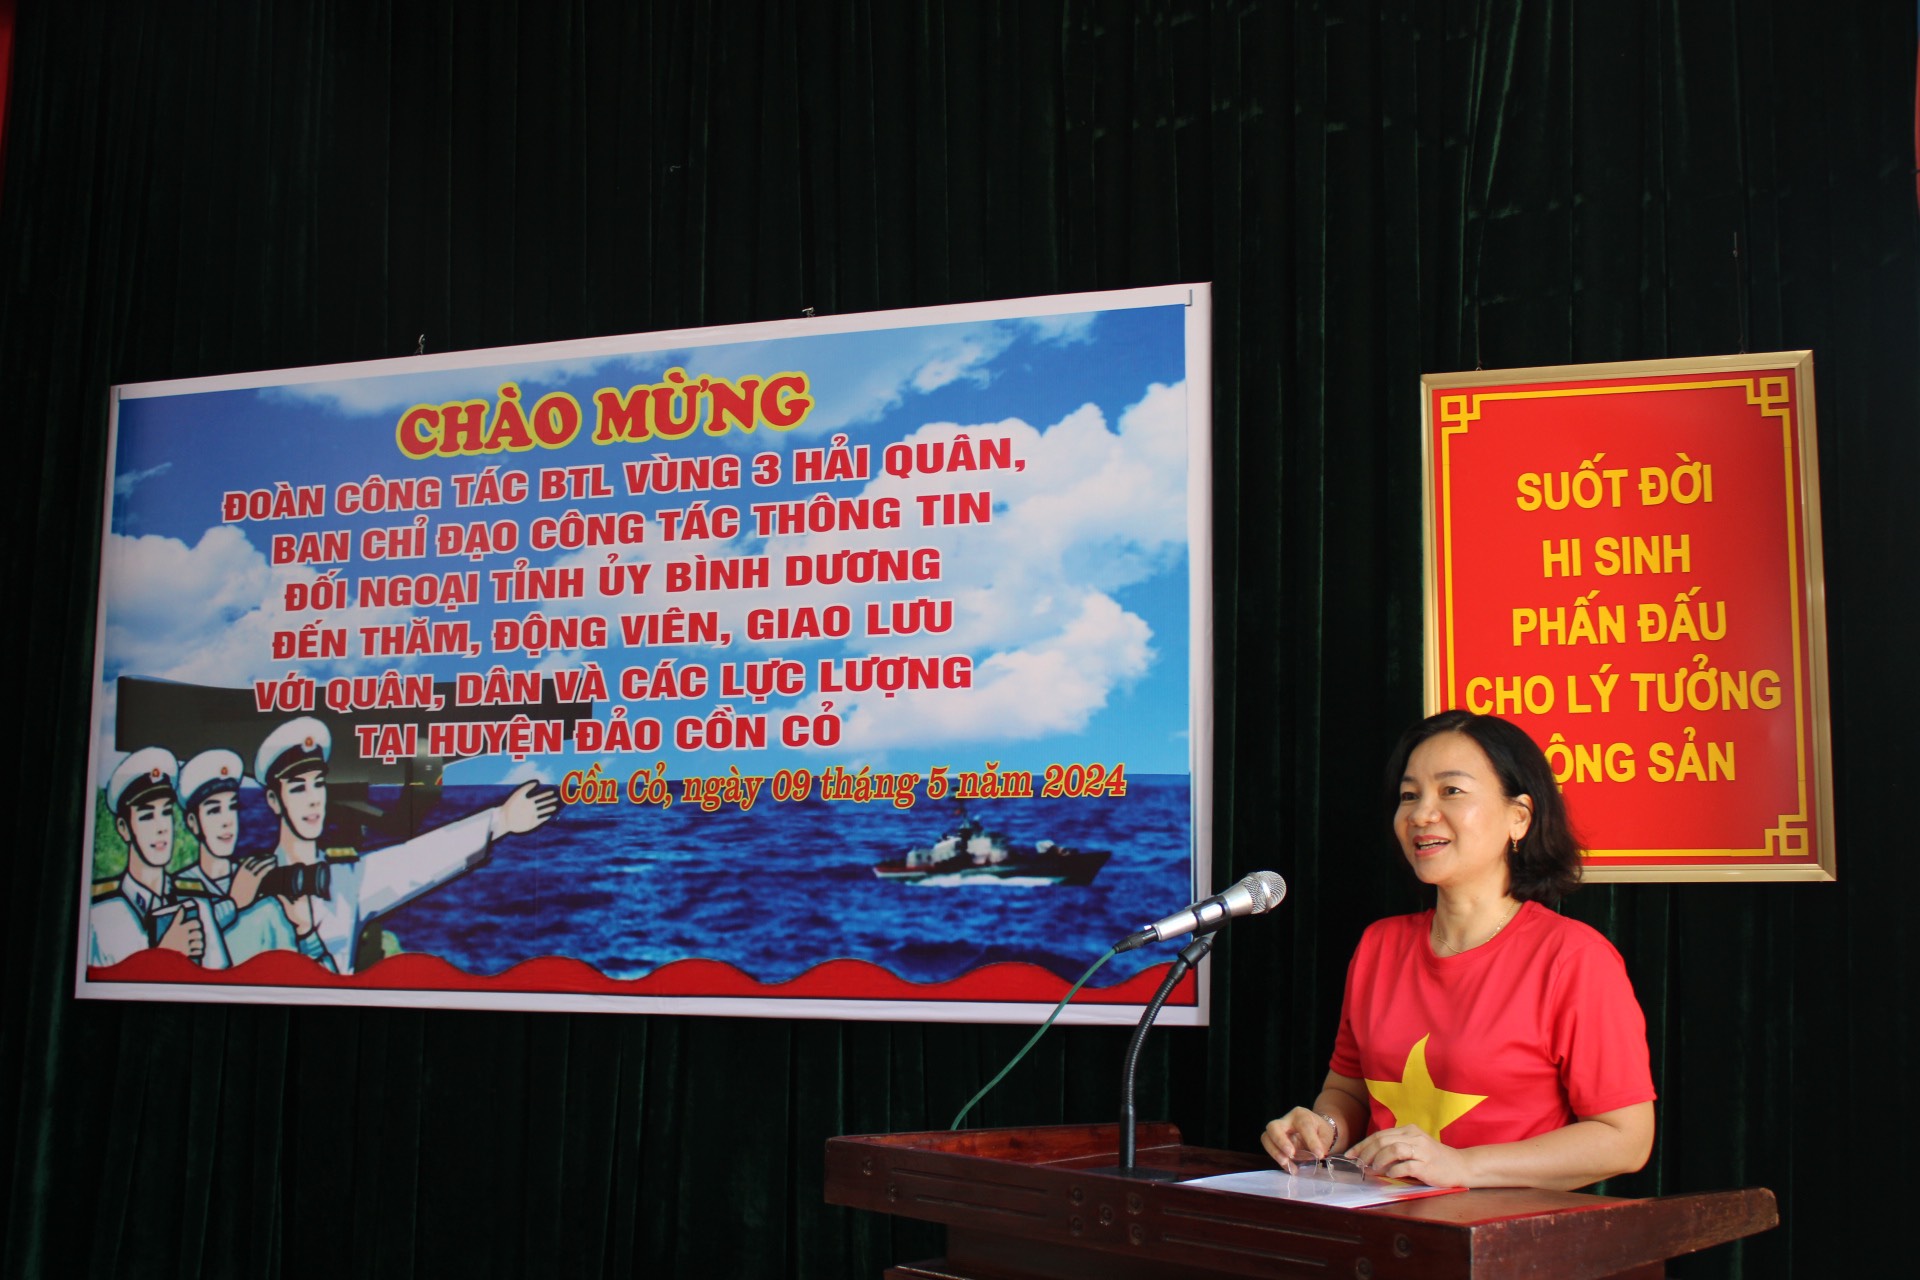 Đồng chí Trương Thị Bích Hạnh, Ủy viên Thường vụ, Trưởng Ban Tuyên giáo Tỉnh ủy phát biểu tại buổi làm việc.